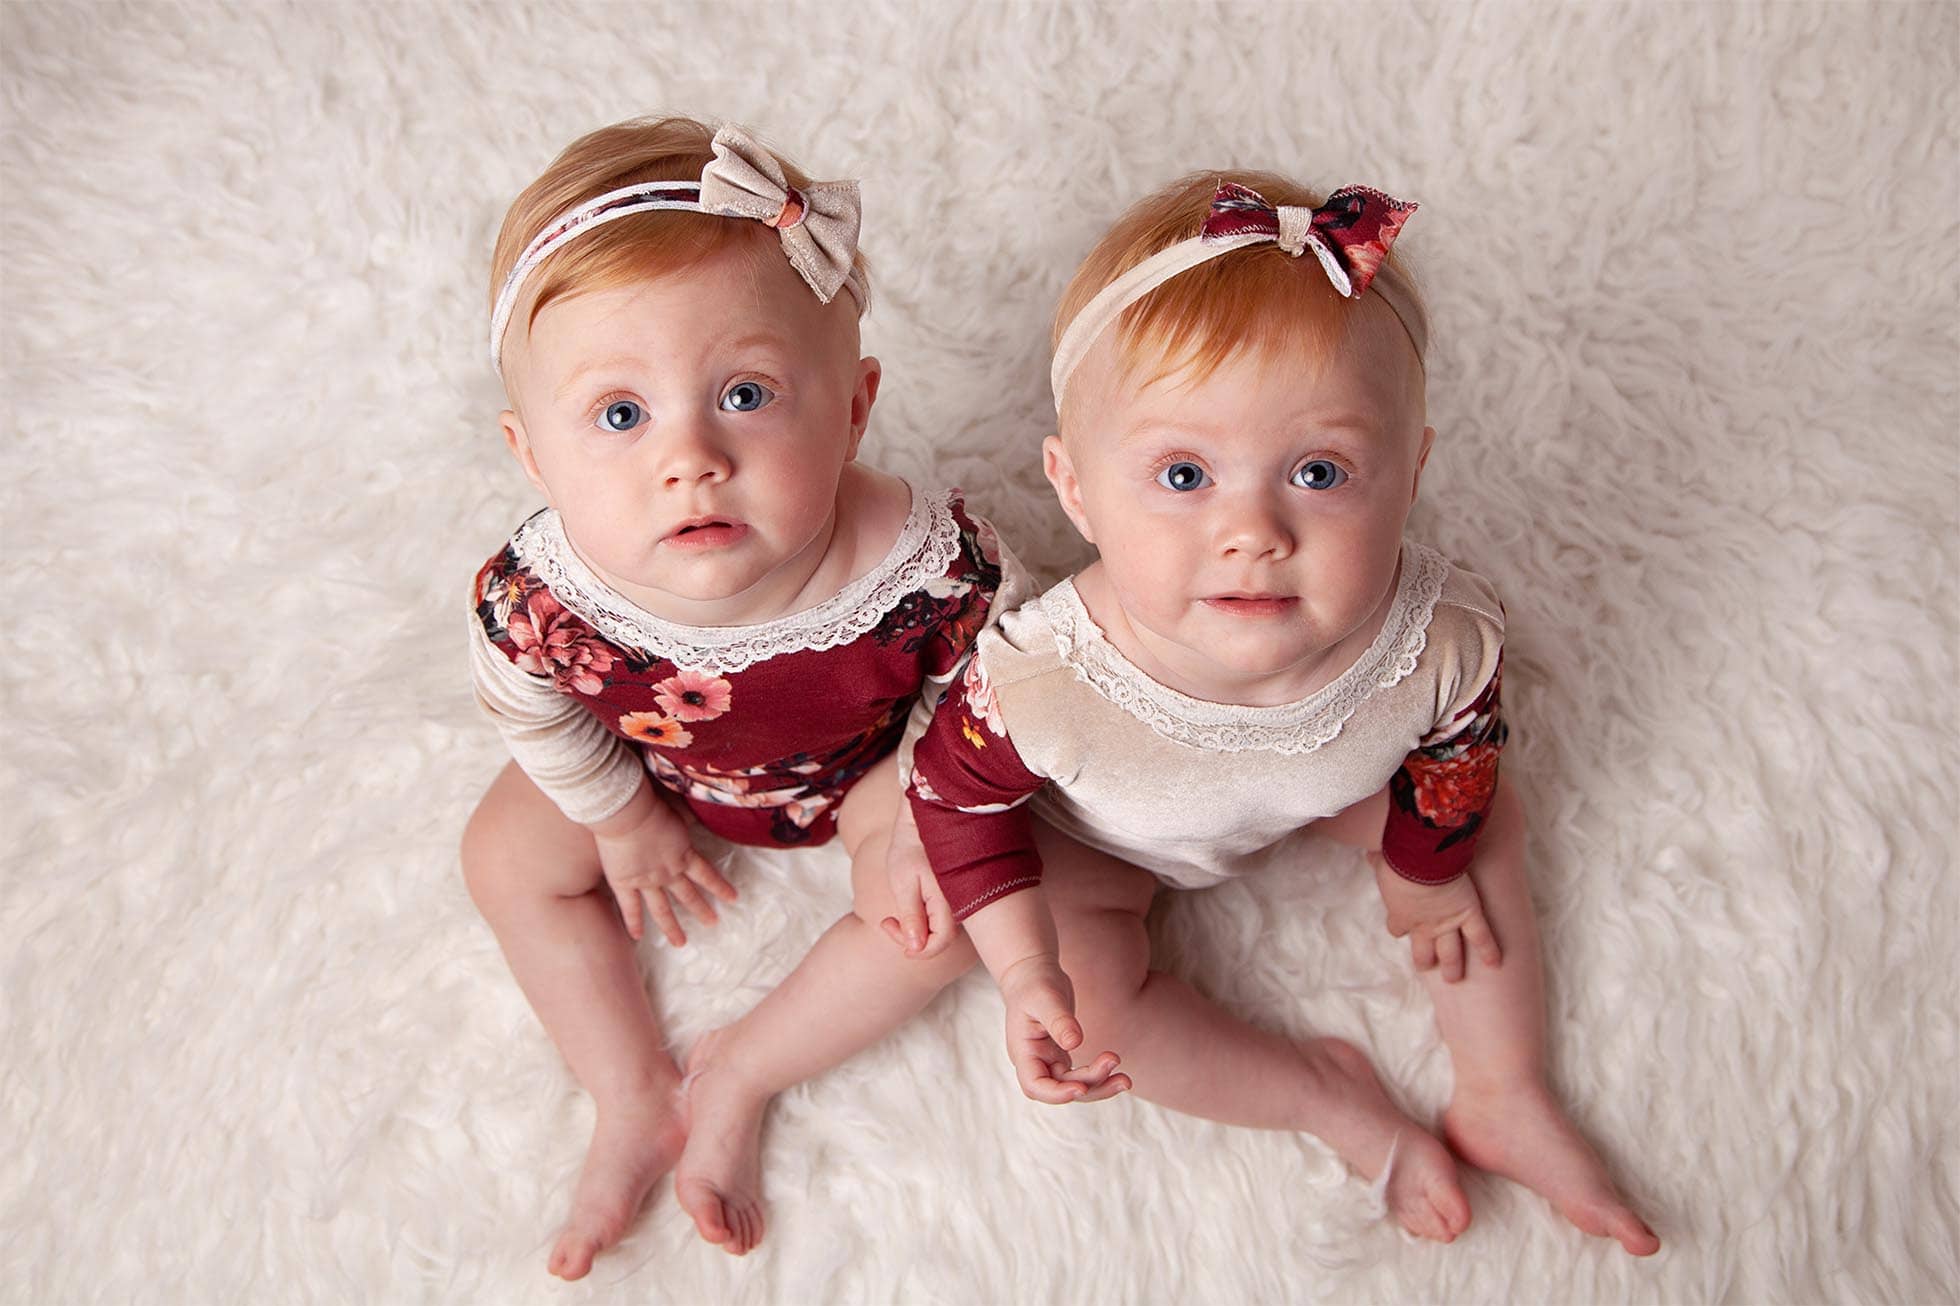 Family Photographer Shrewsbury, Baby photographer shrewsbury, twin baby girls, photographer shrewsbury